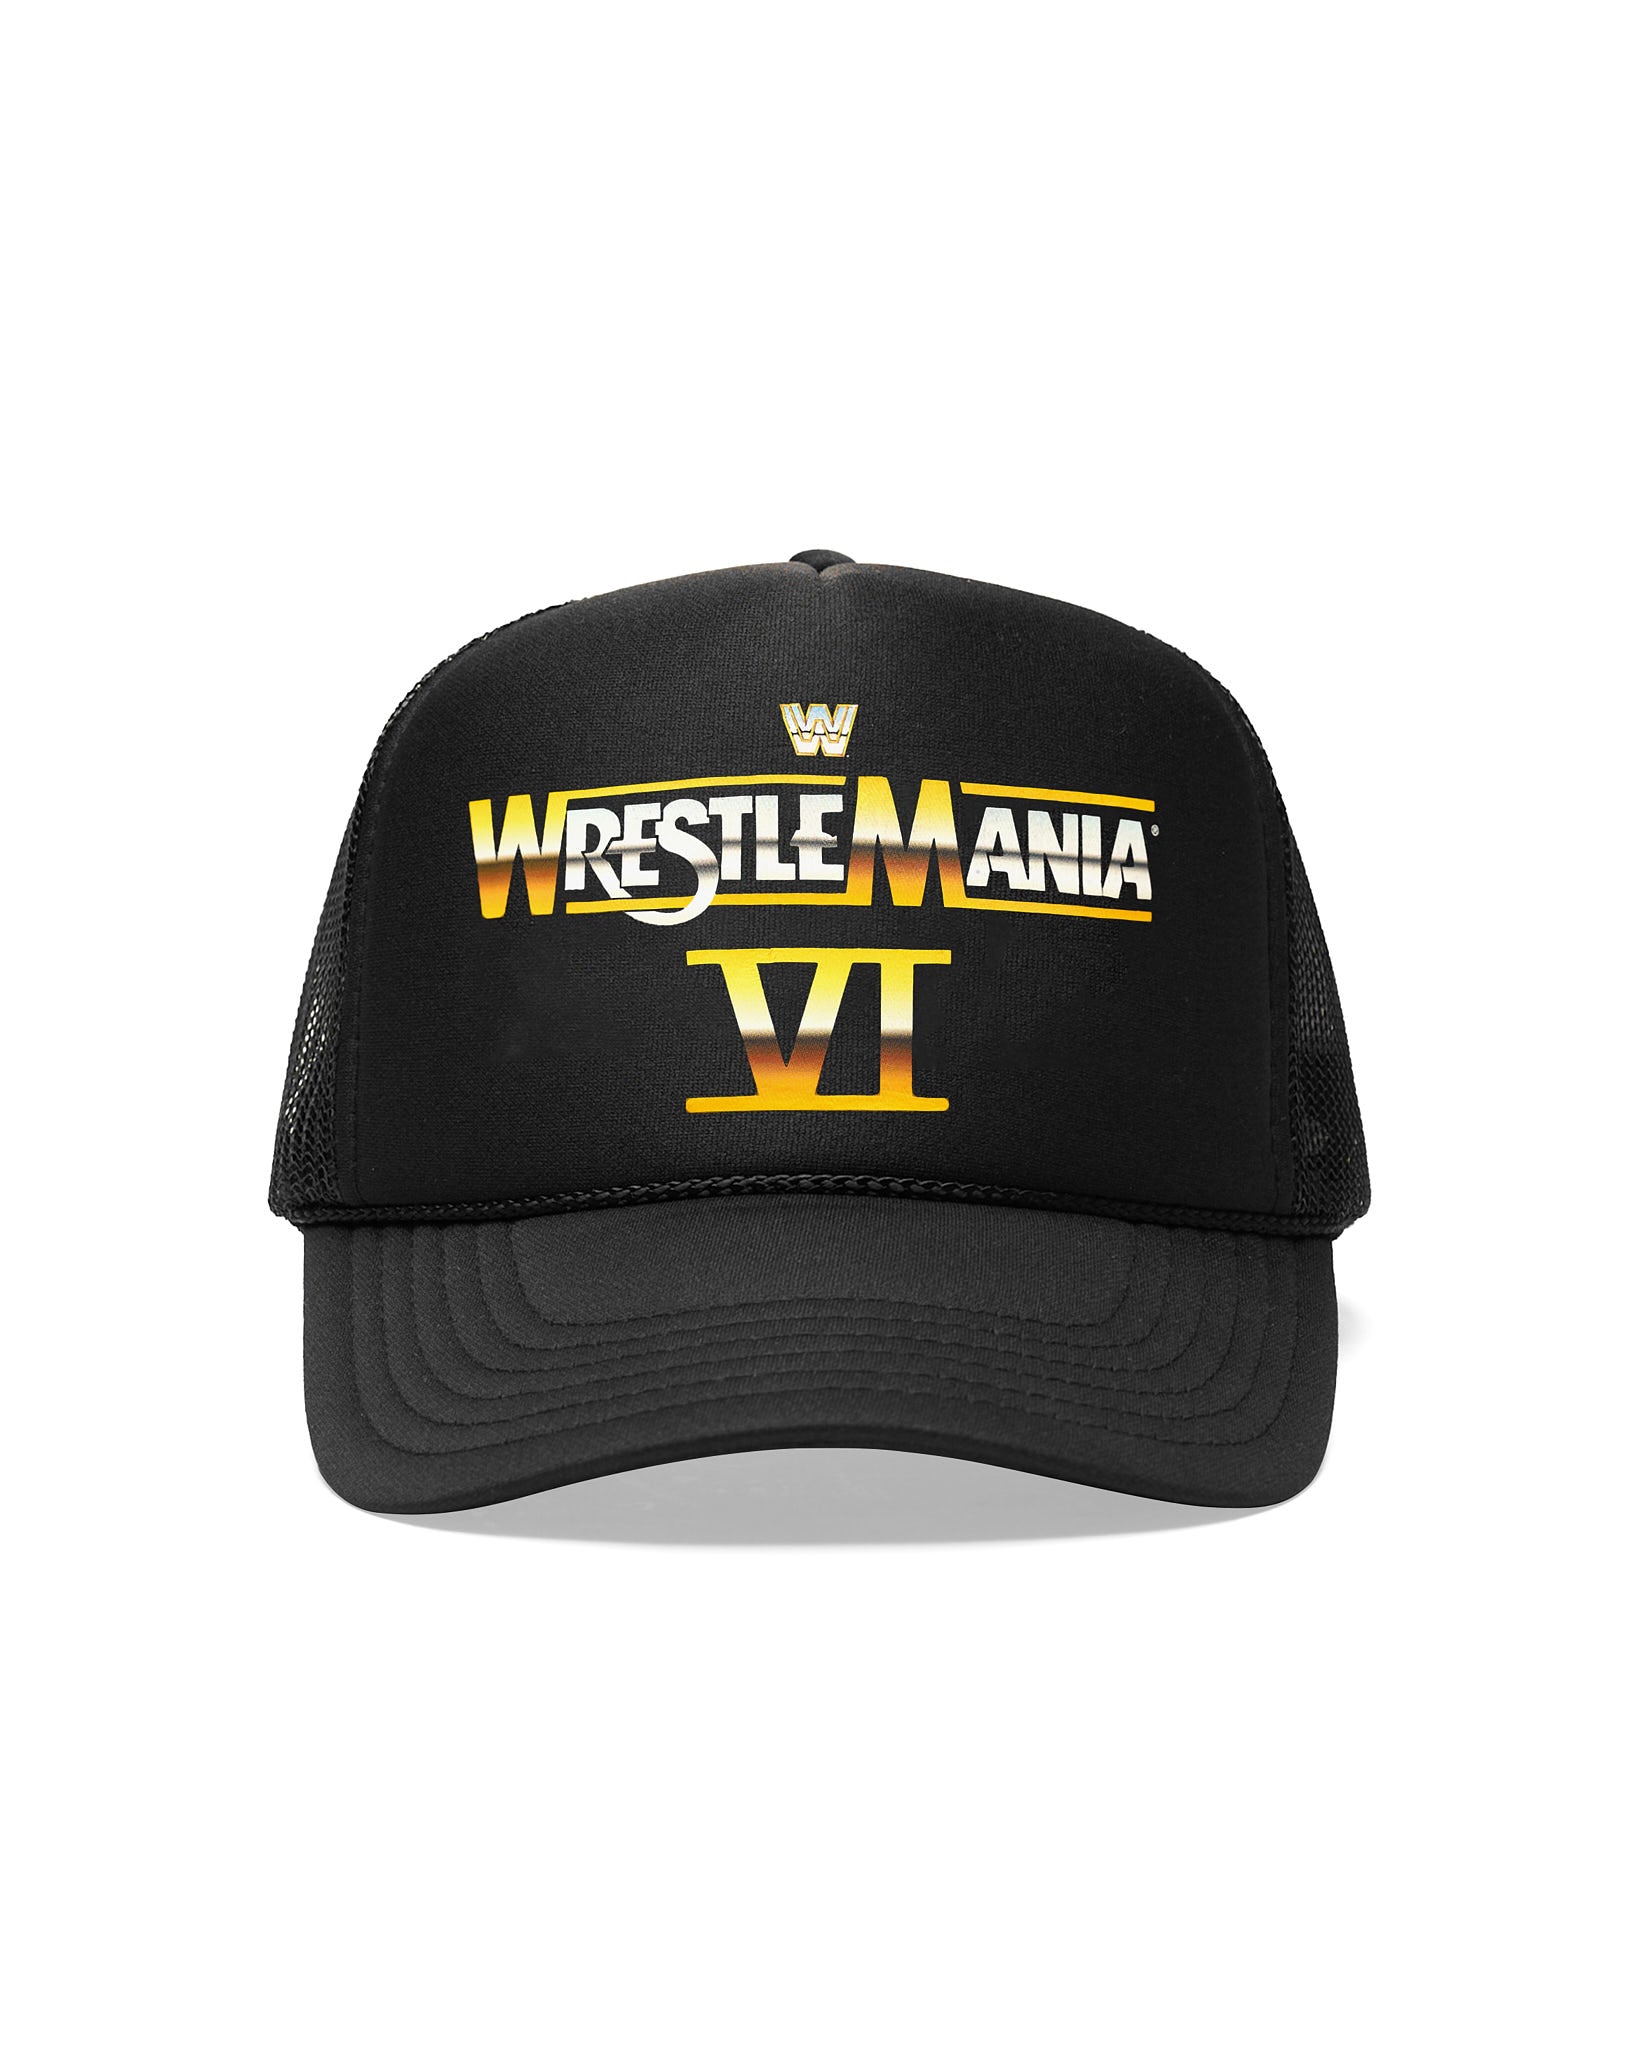 WrestleMania 6 Ultimate Challenge Trucker Hat